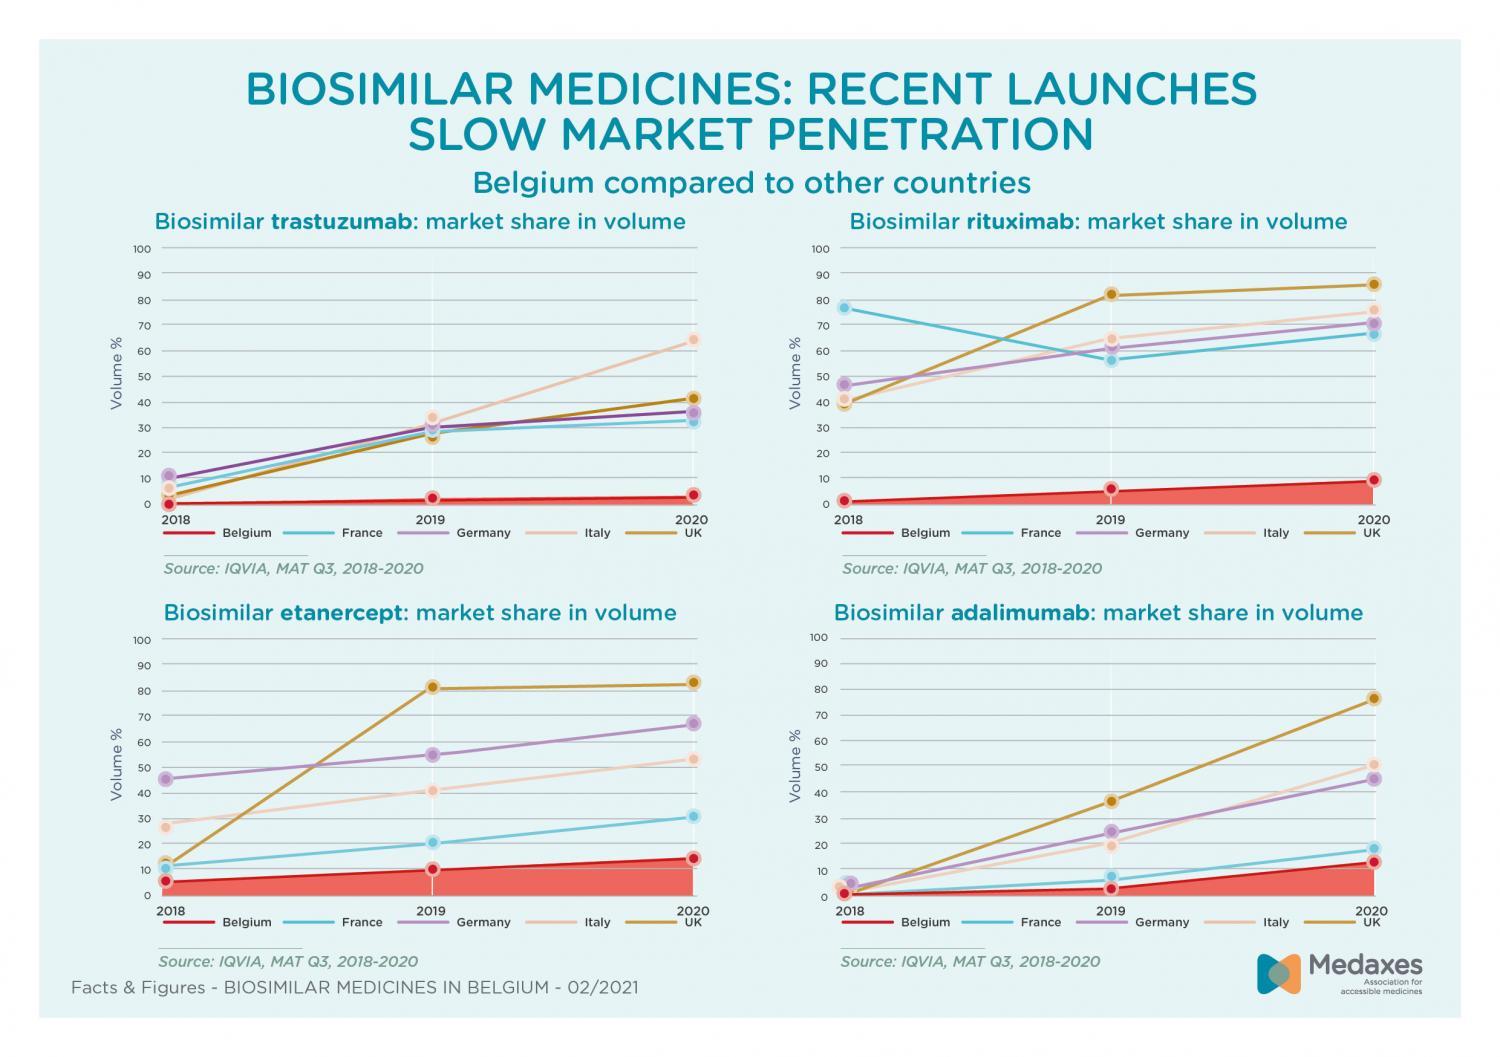 Recente lanceringen biosimilaire geneesmiddelen: markt in België groeit traag vergeleken met andere landen 